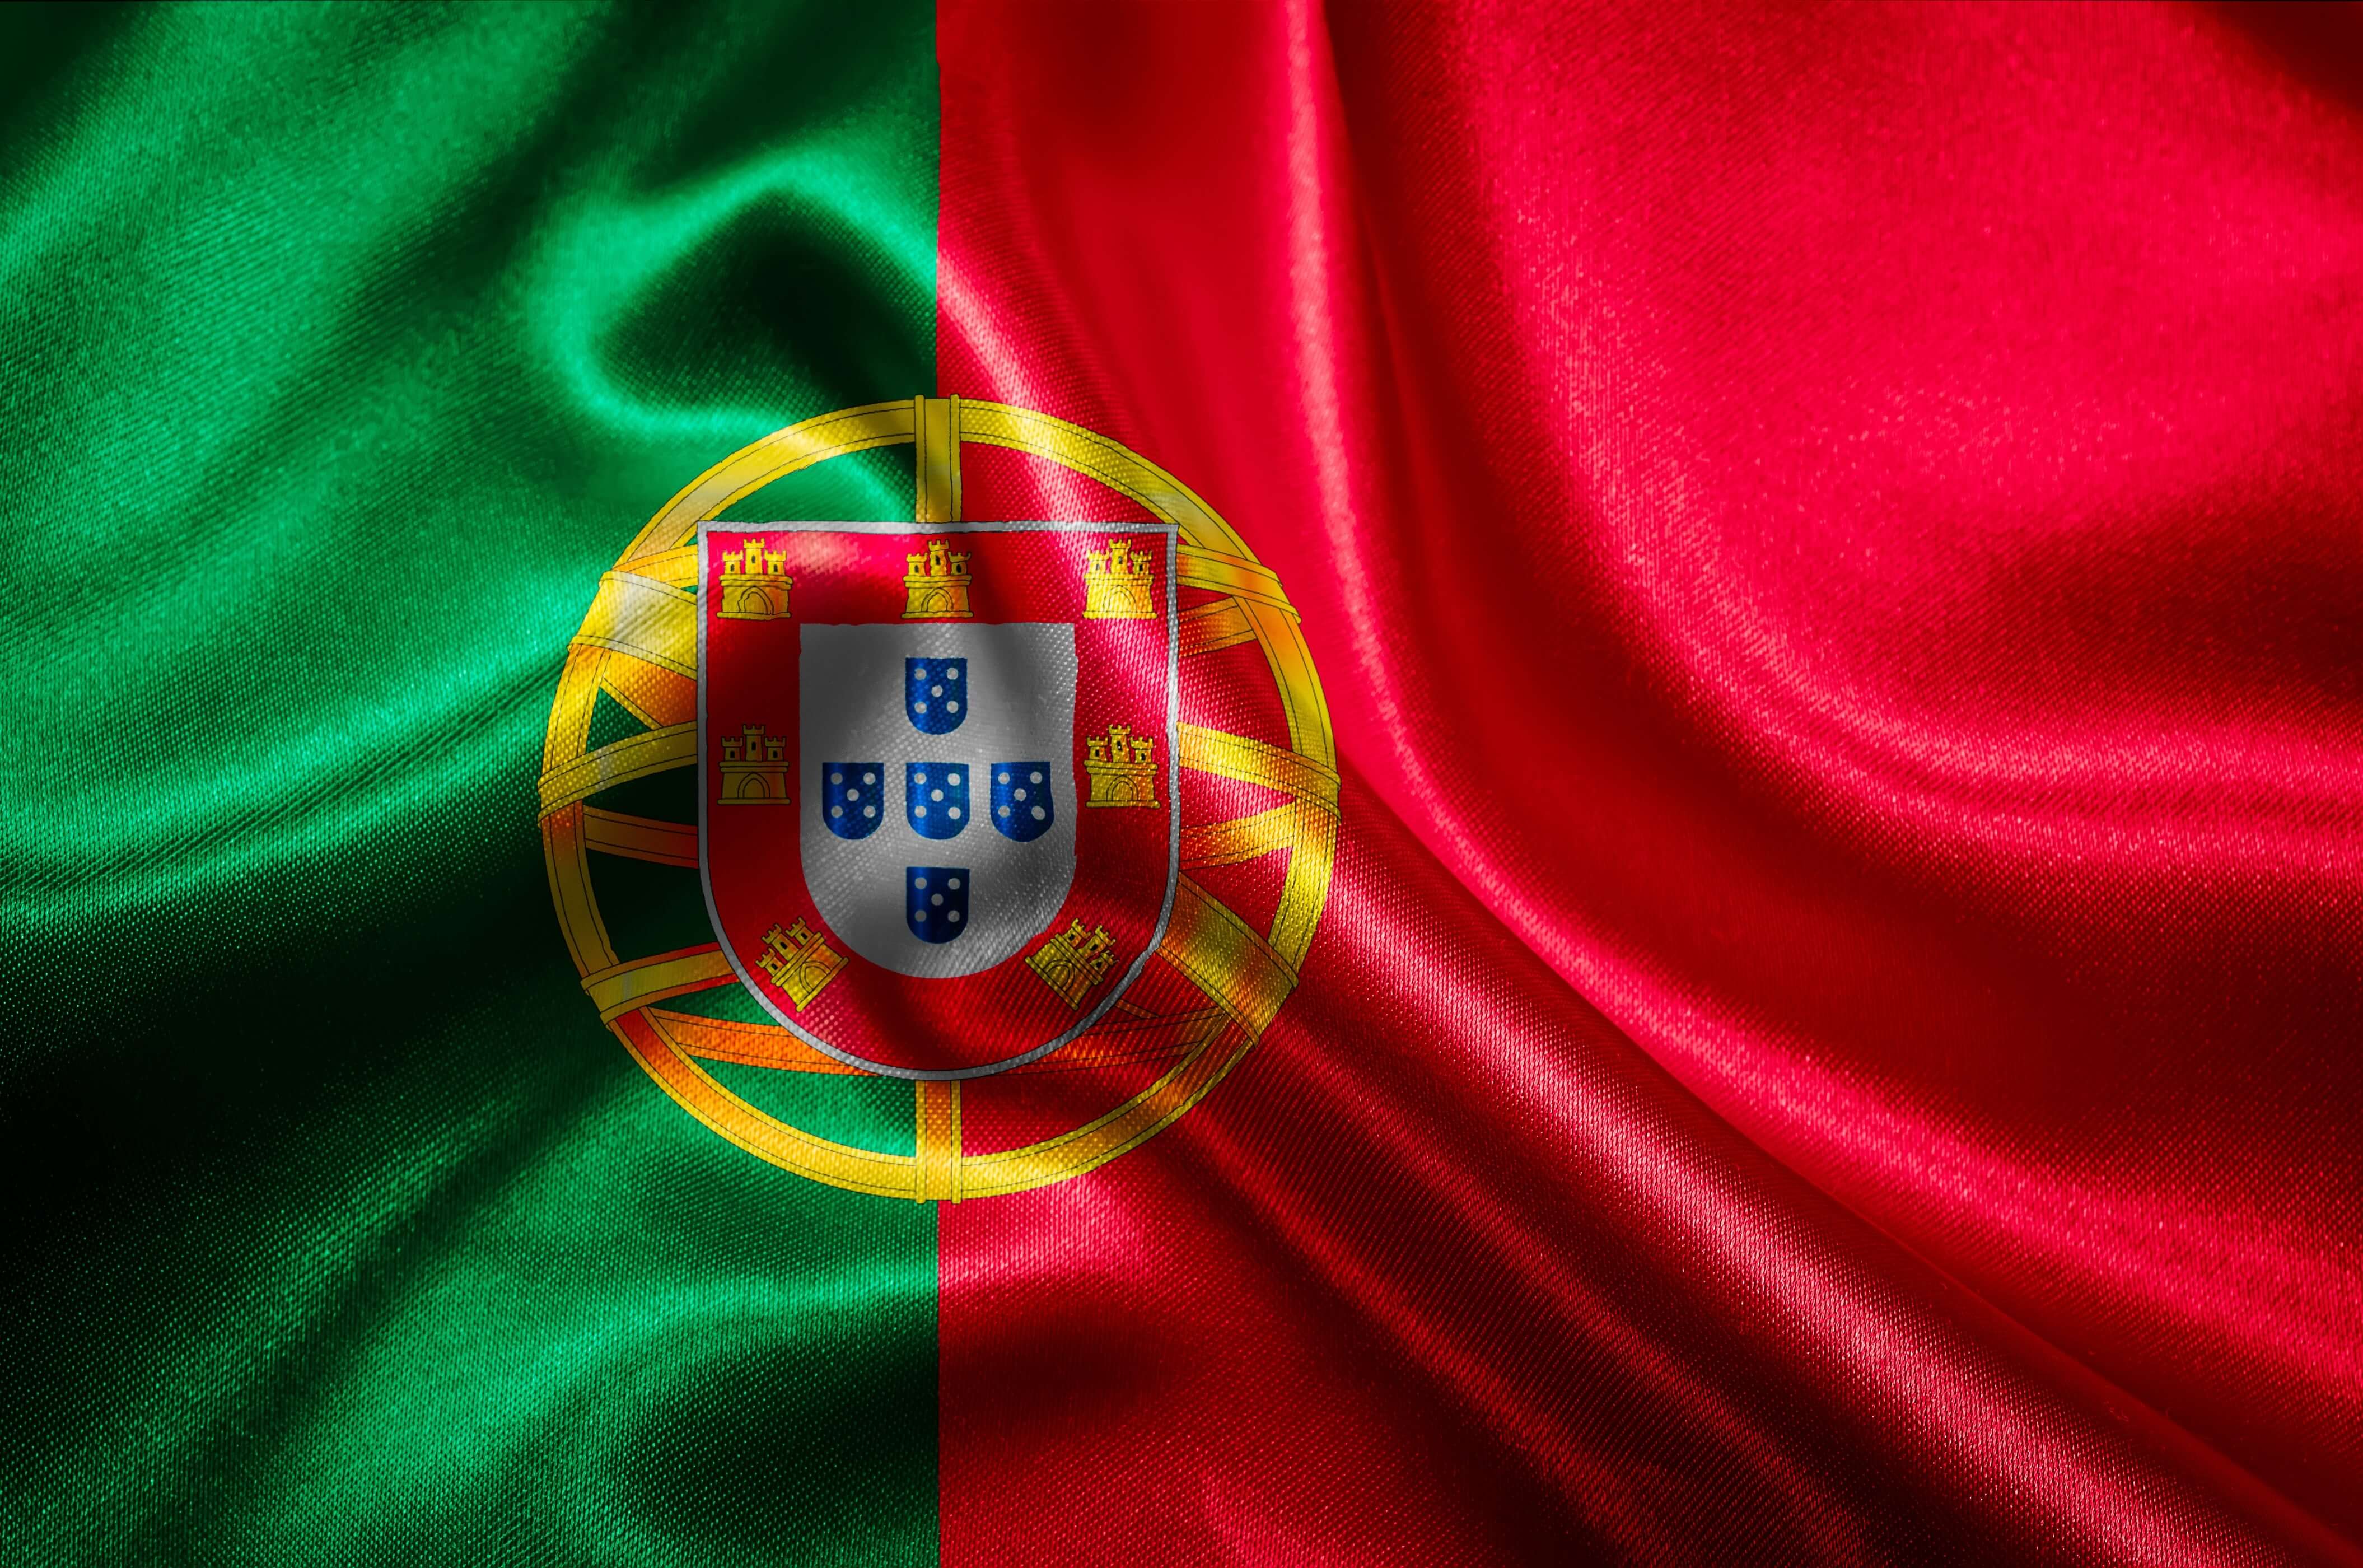 Португальский государственный страны. Флаг Португалии. Флаг Португалии 1557. Португалия флаг и герб. Флаг Португалии 1939.